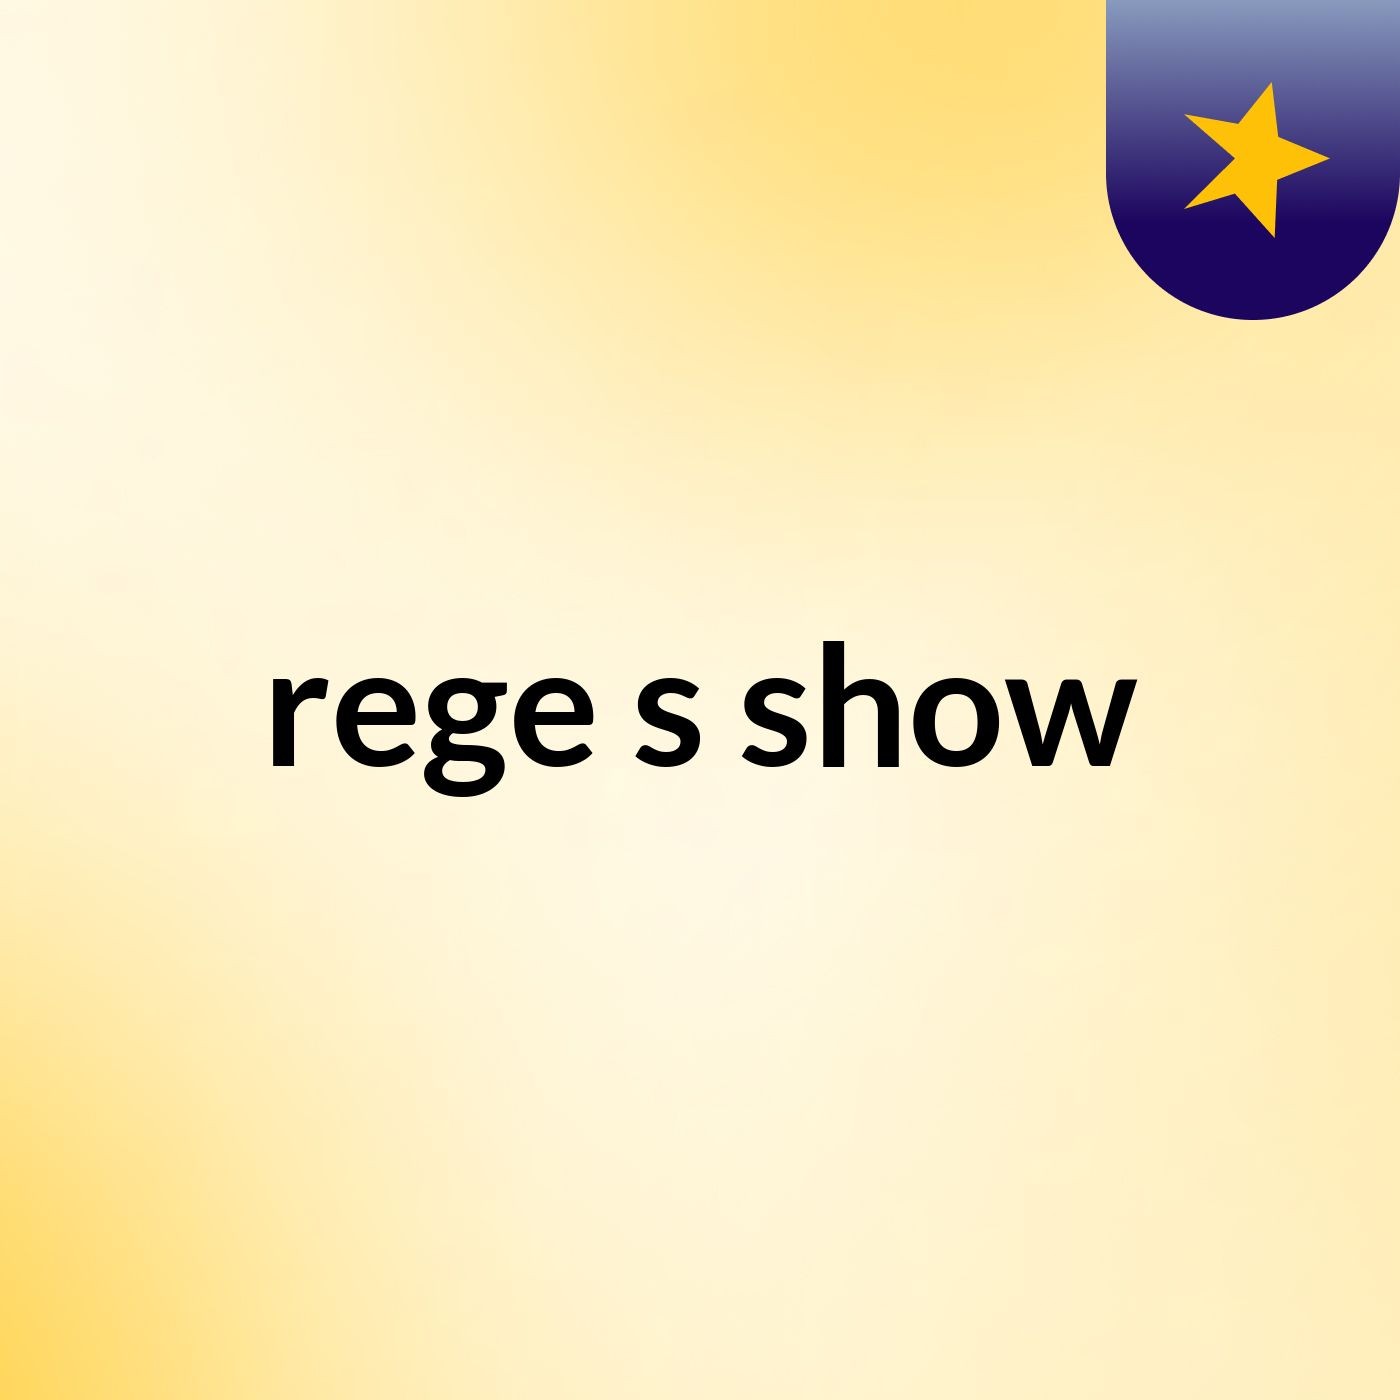 rege's show